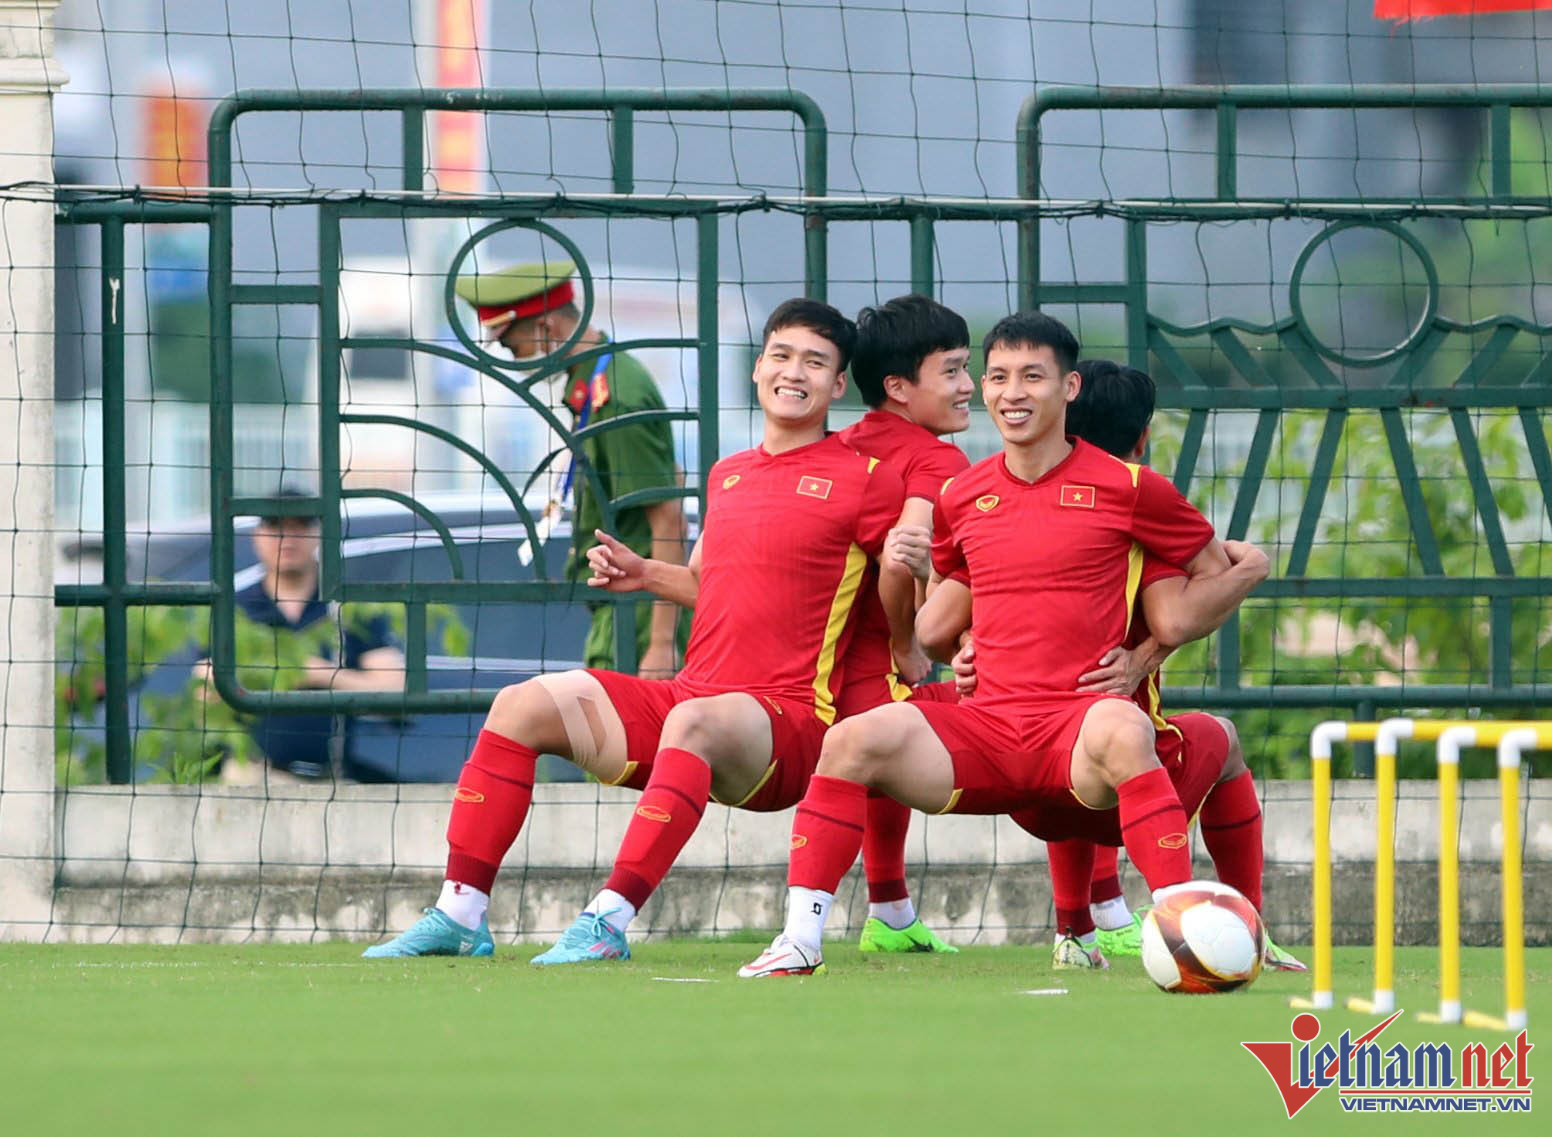 Nụ cười, thoải mái đã hiện lên trên gương mặt các tuyển thủ U23 Việt Nam